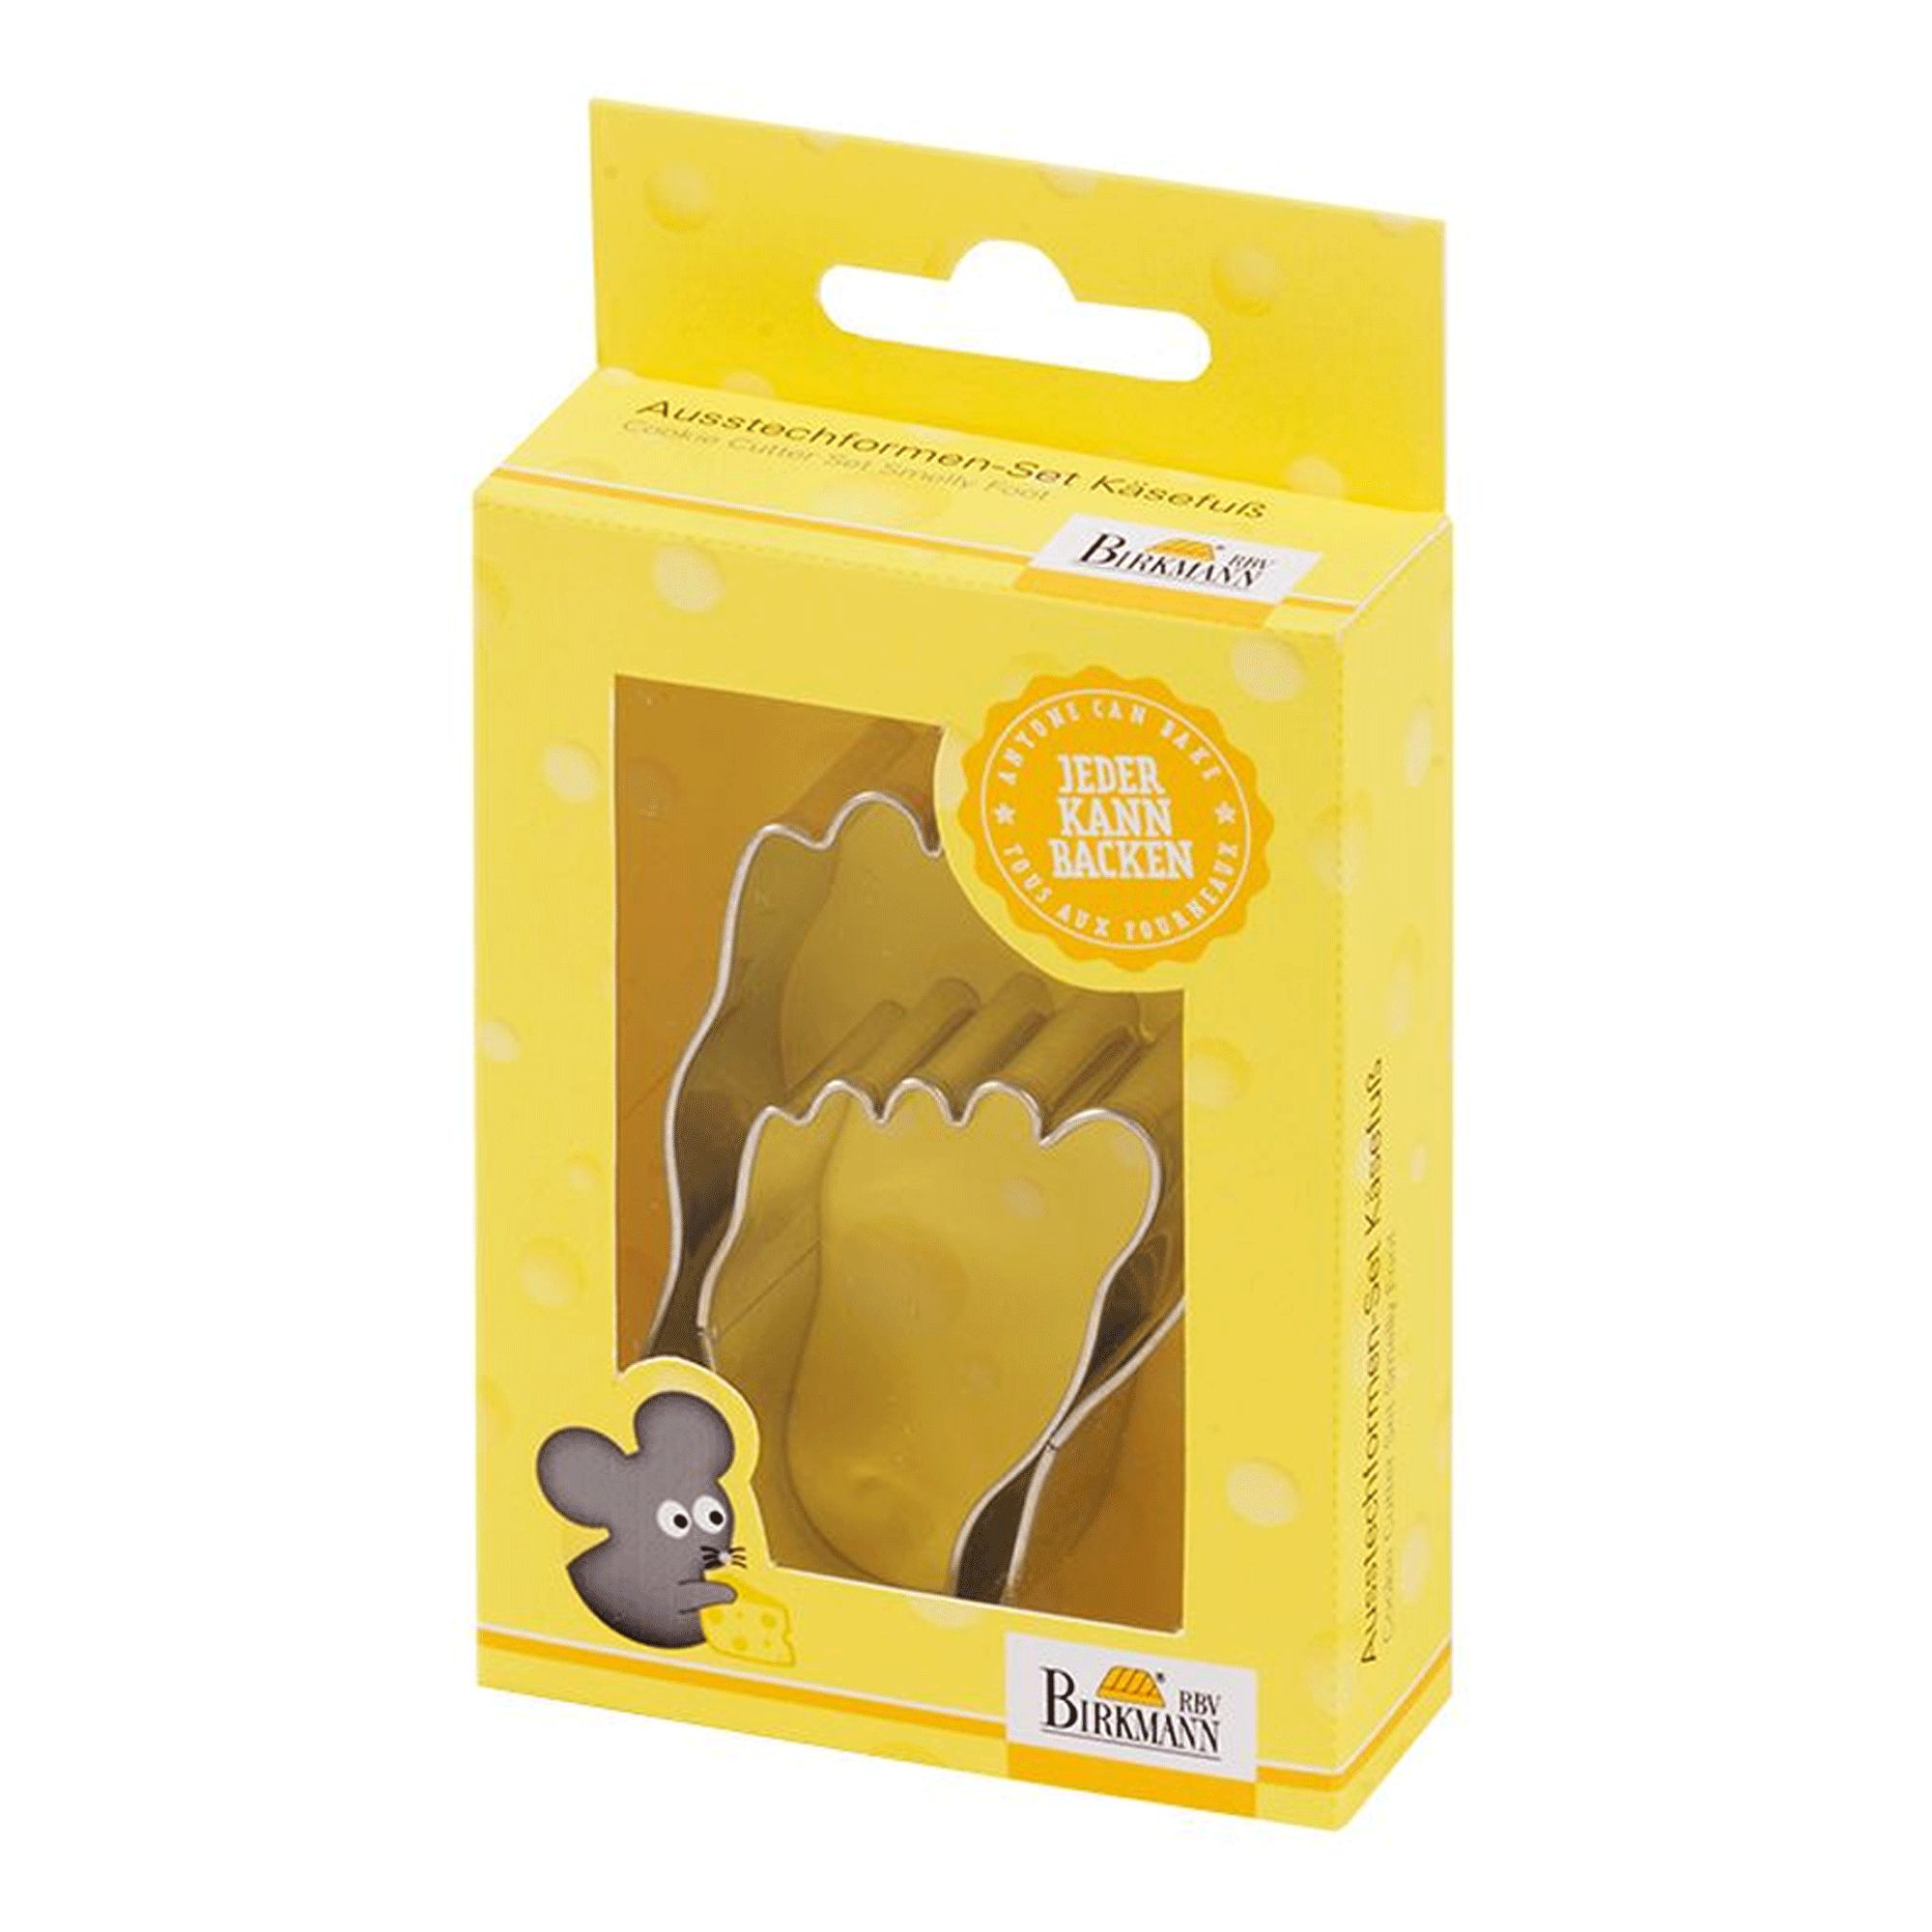 RBV Birkmann - Cookie cutter Set - Cheese Foot